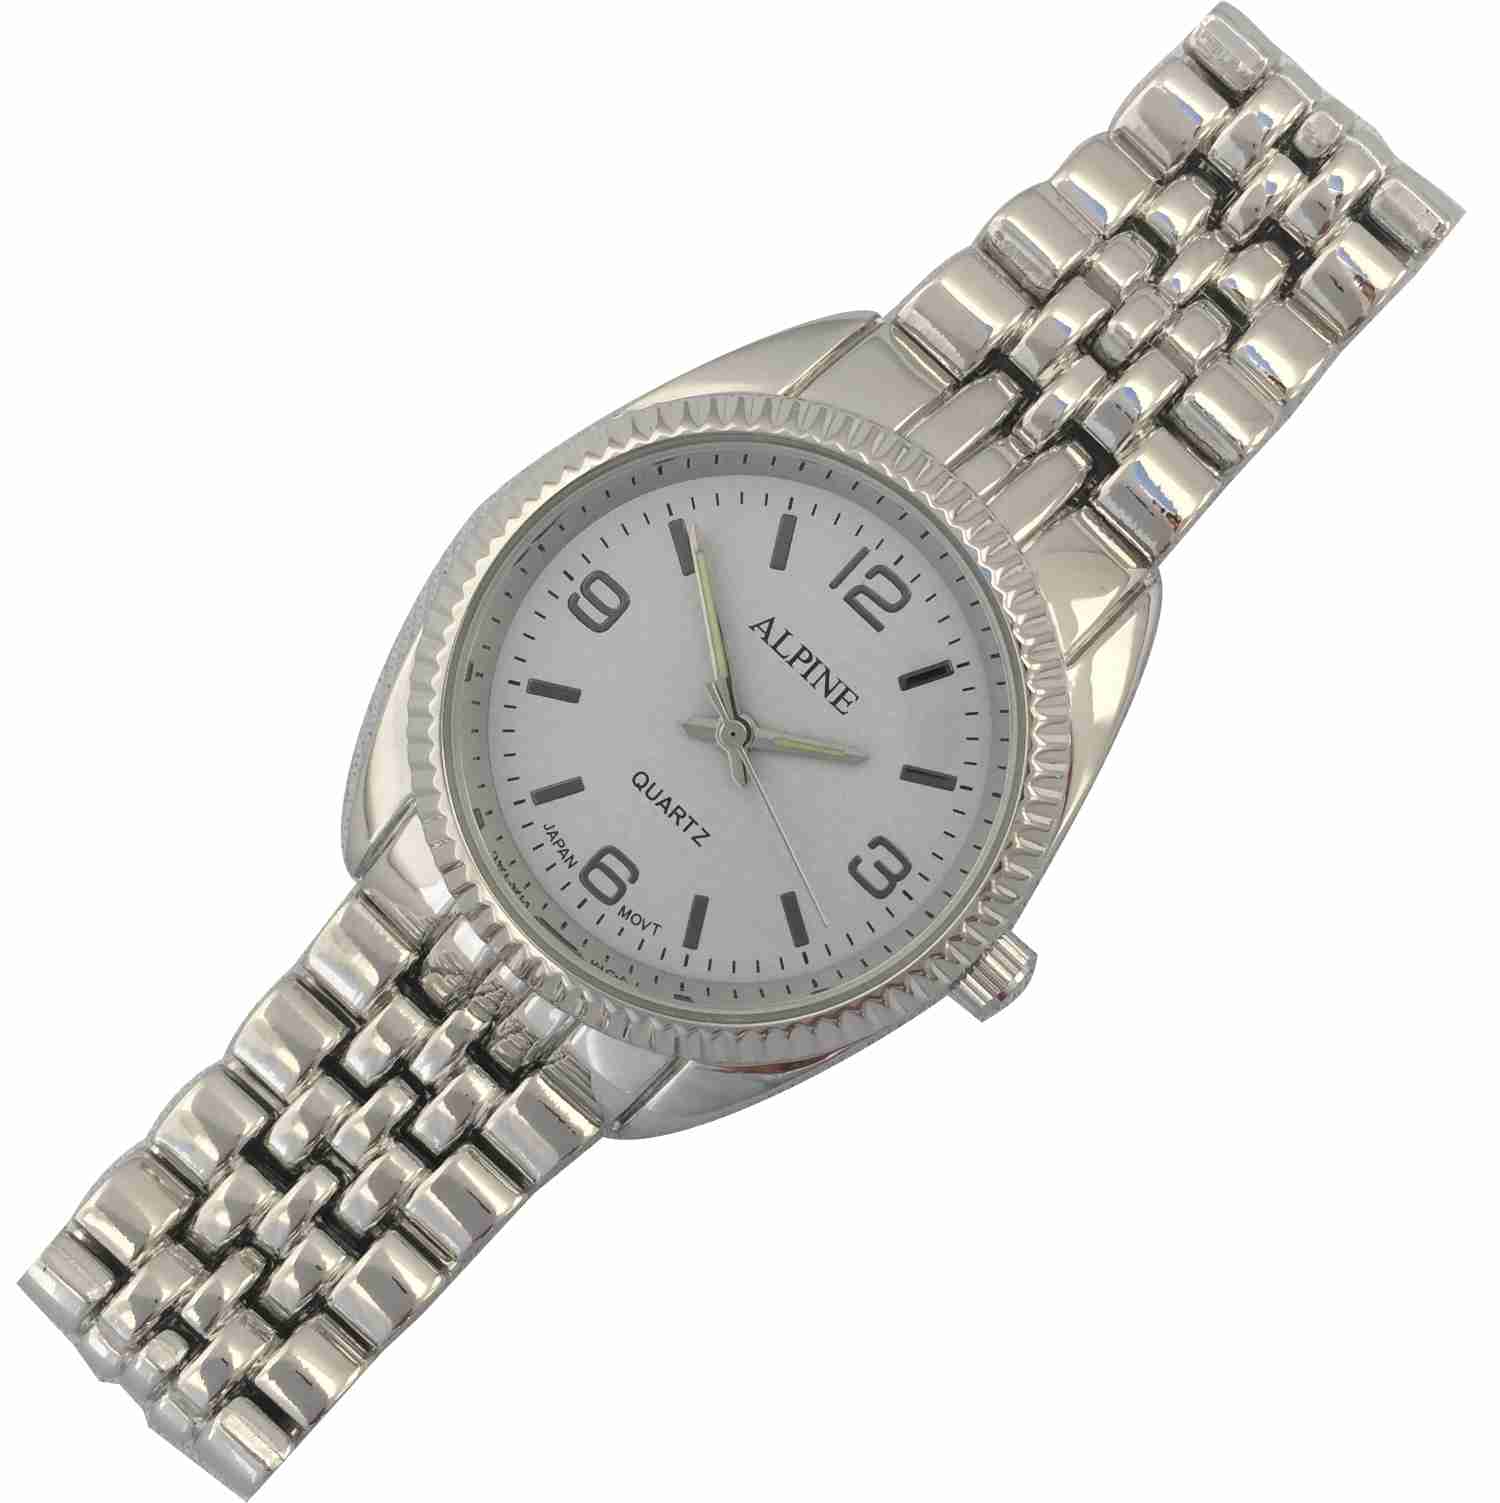 Mens Bracelet Watch - Silver/White Dial